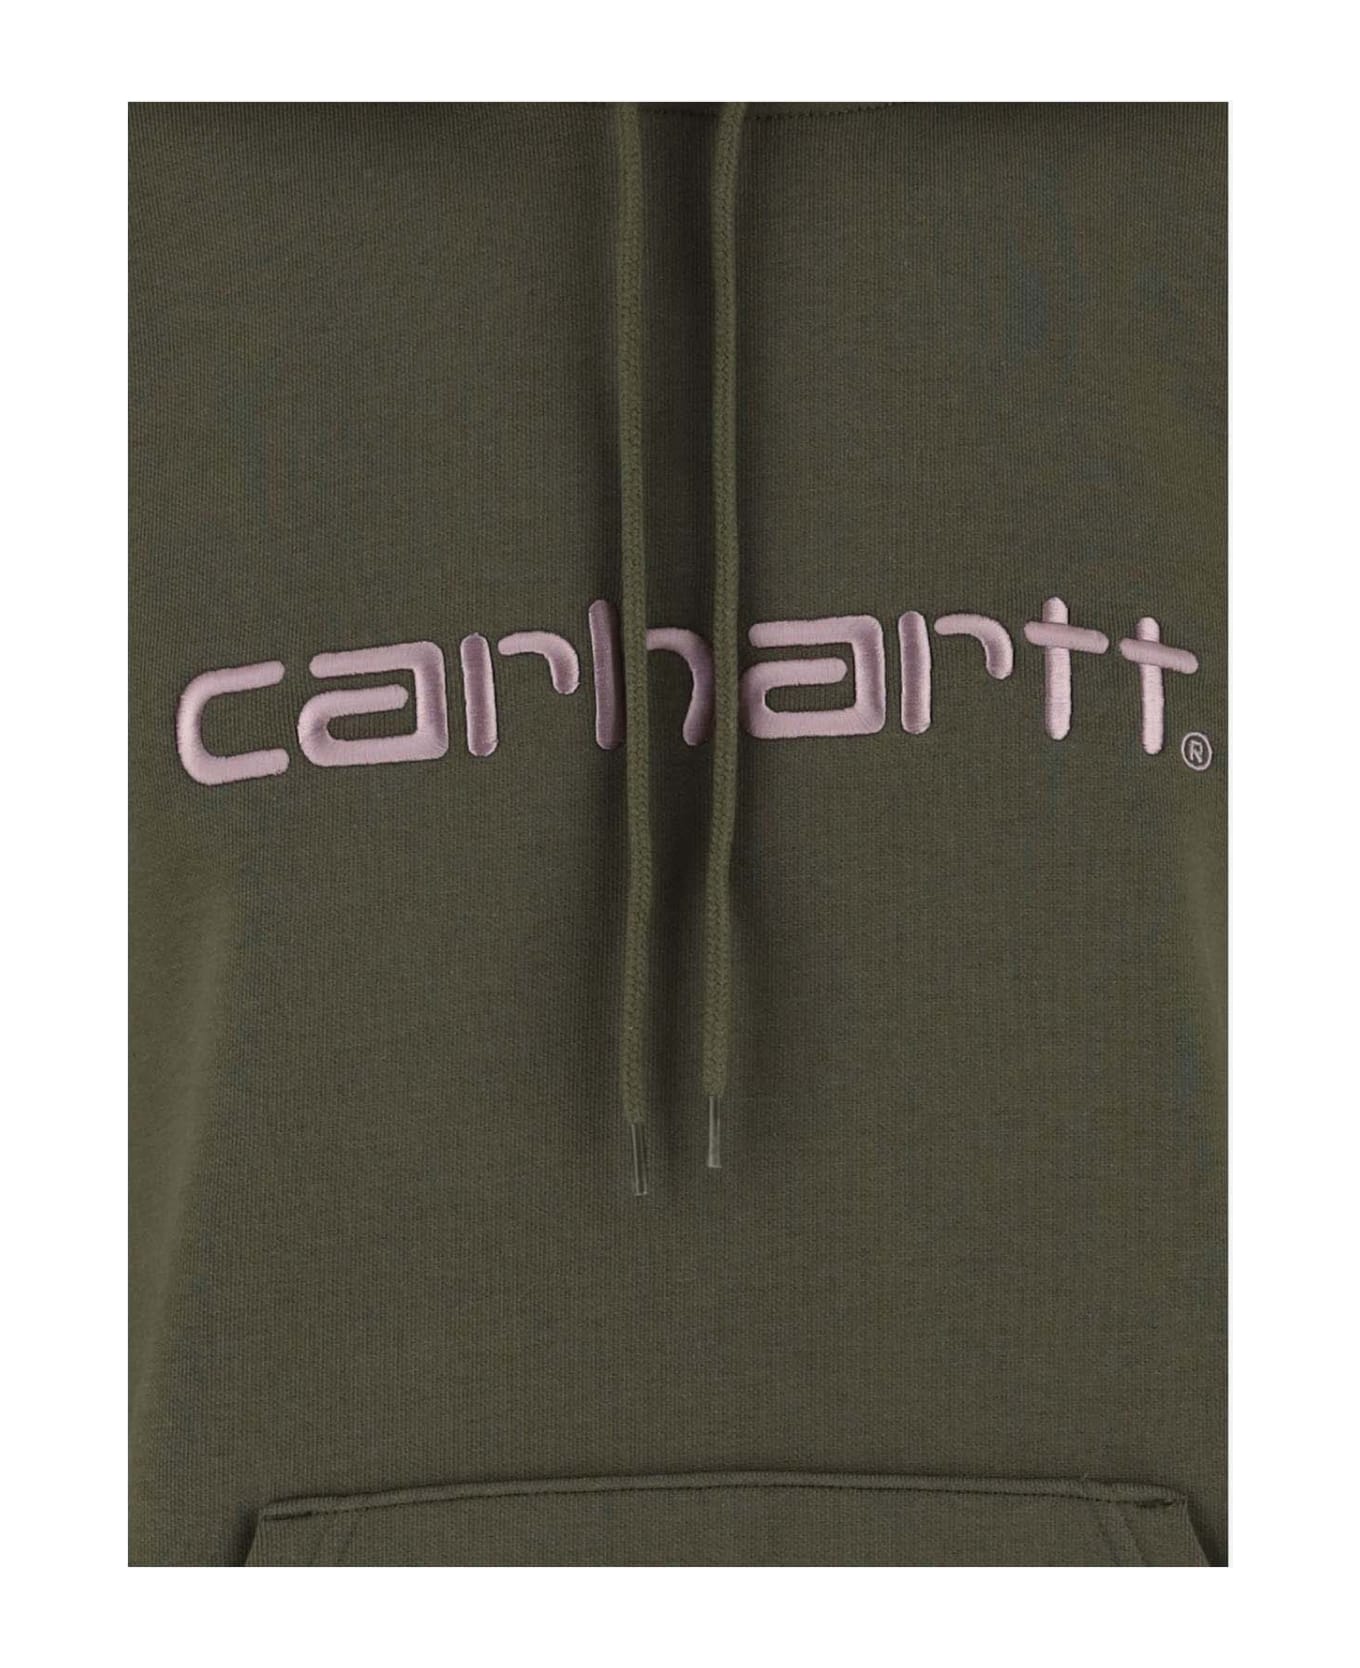 Carhartt Logo Cotton Blend Hoodie - Green